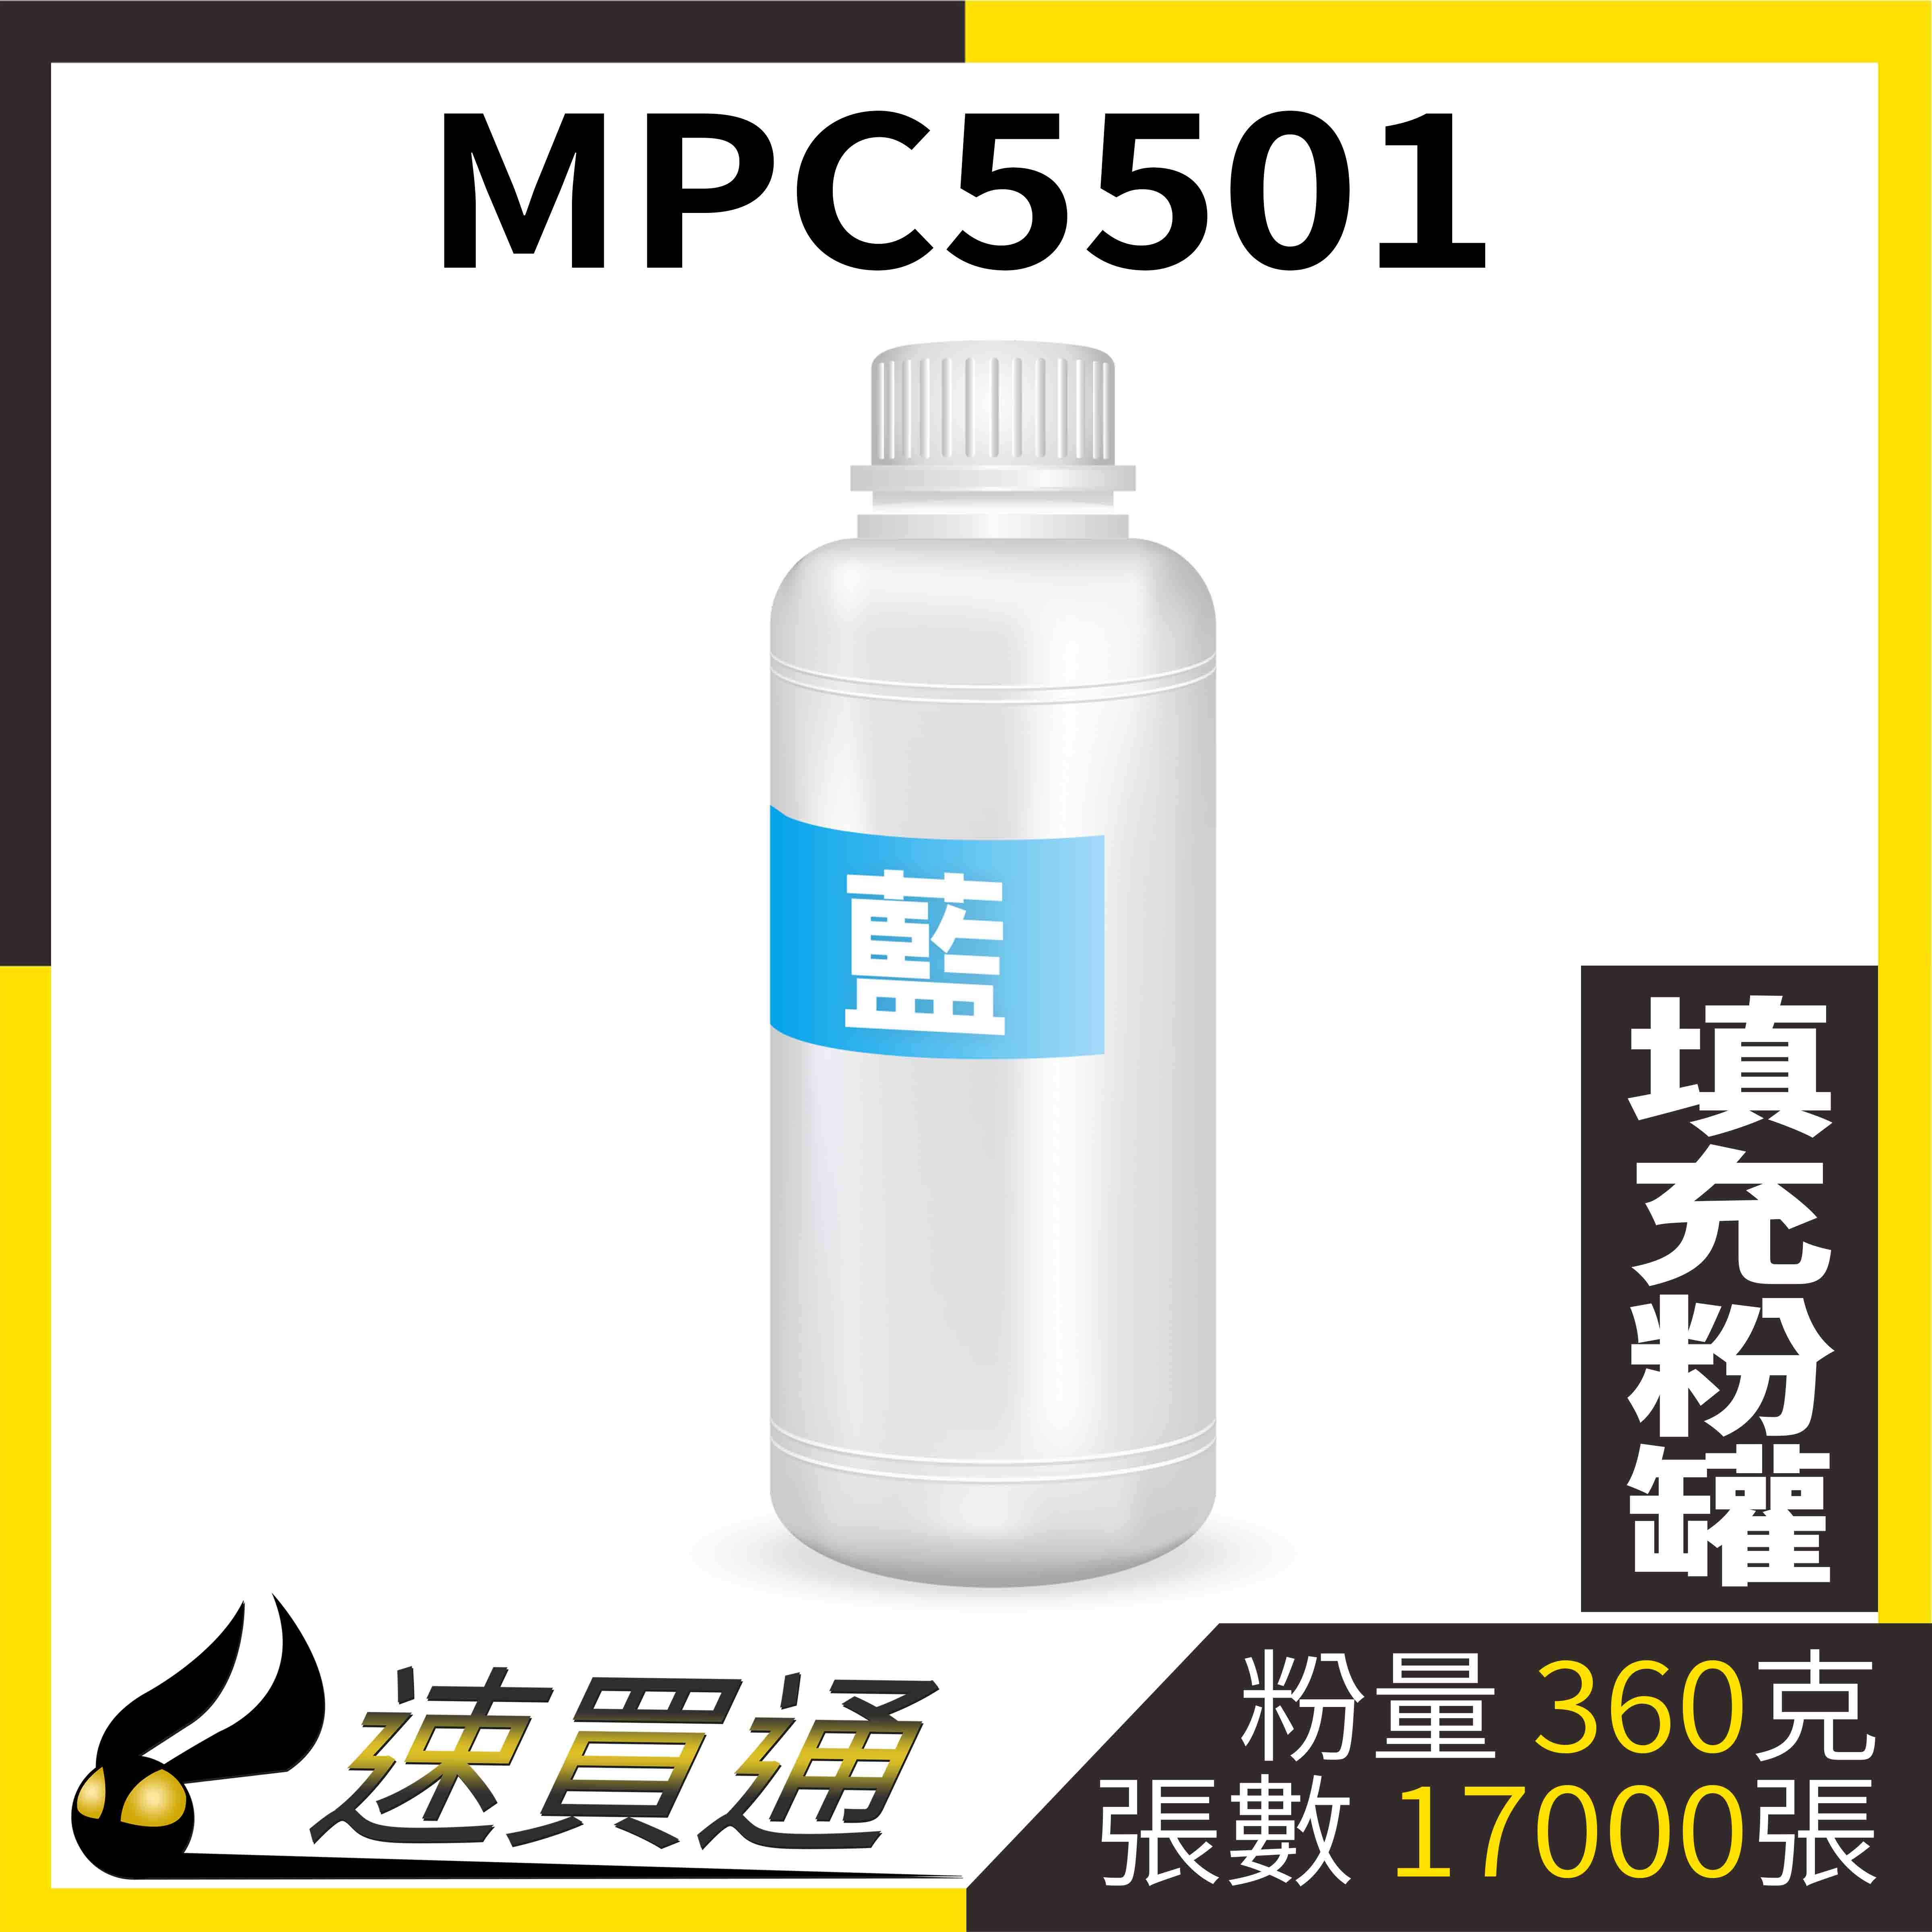 【速買通】RICOH MPC5501 藍 填充式碳粉罐